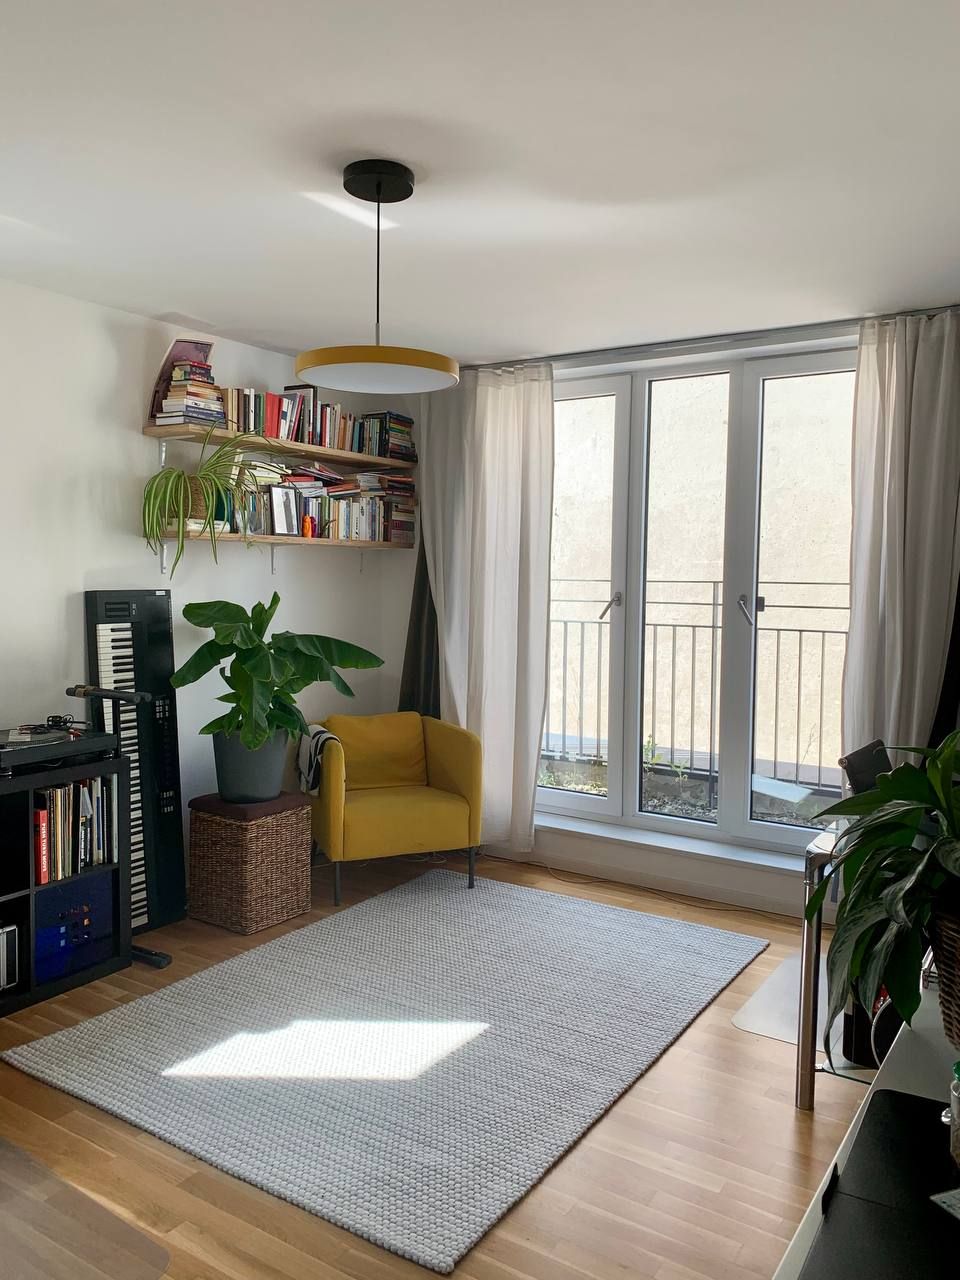 Modern, sunny & quiet 3-room apartment in Friedrichshain